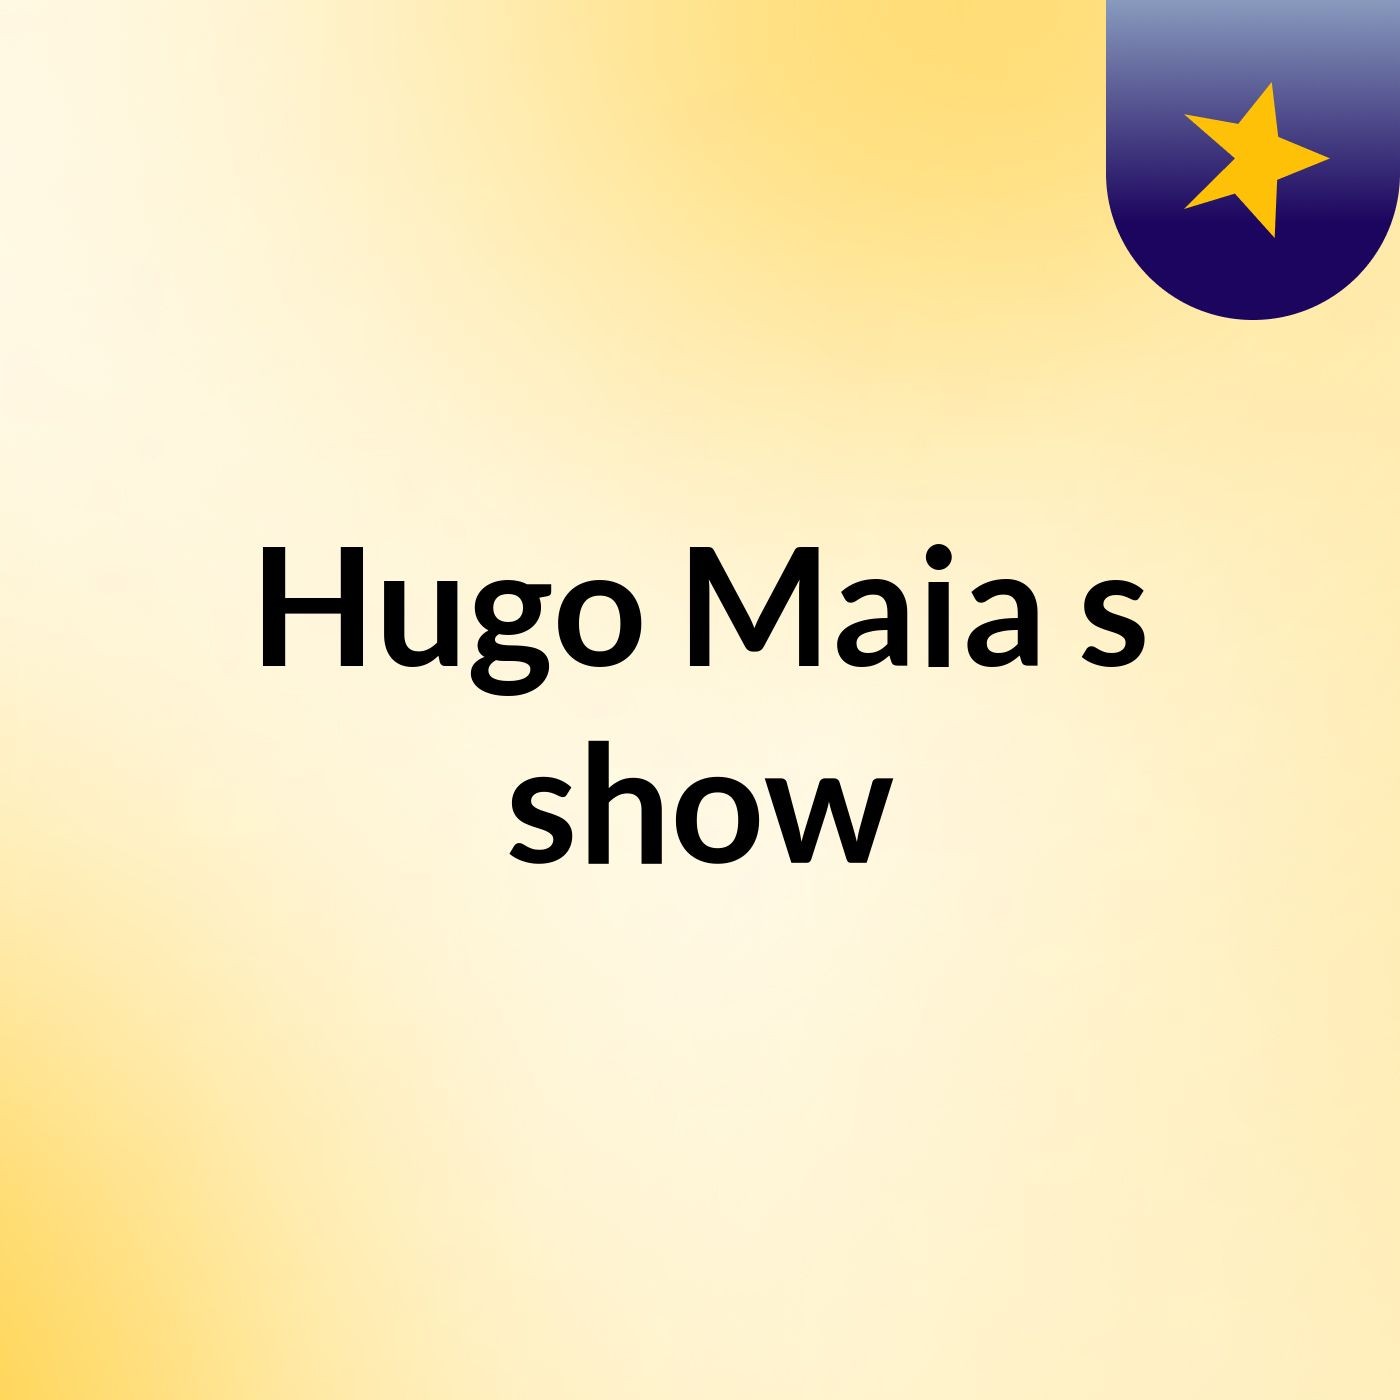 Hugo Maia's show